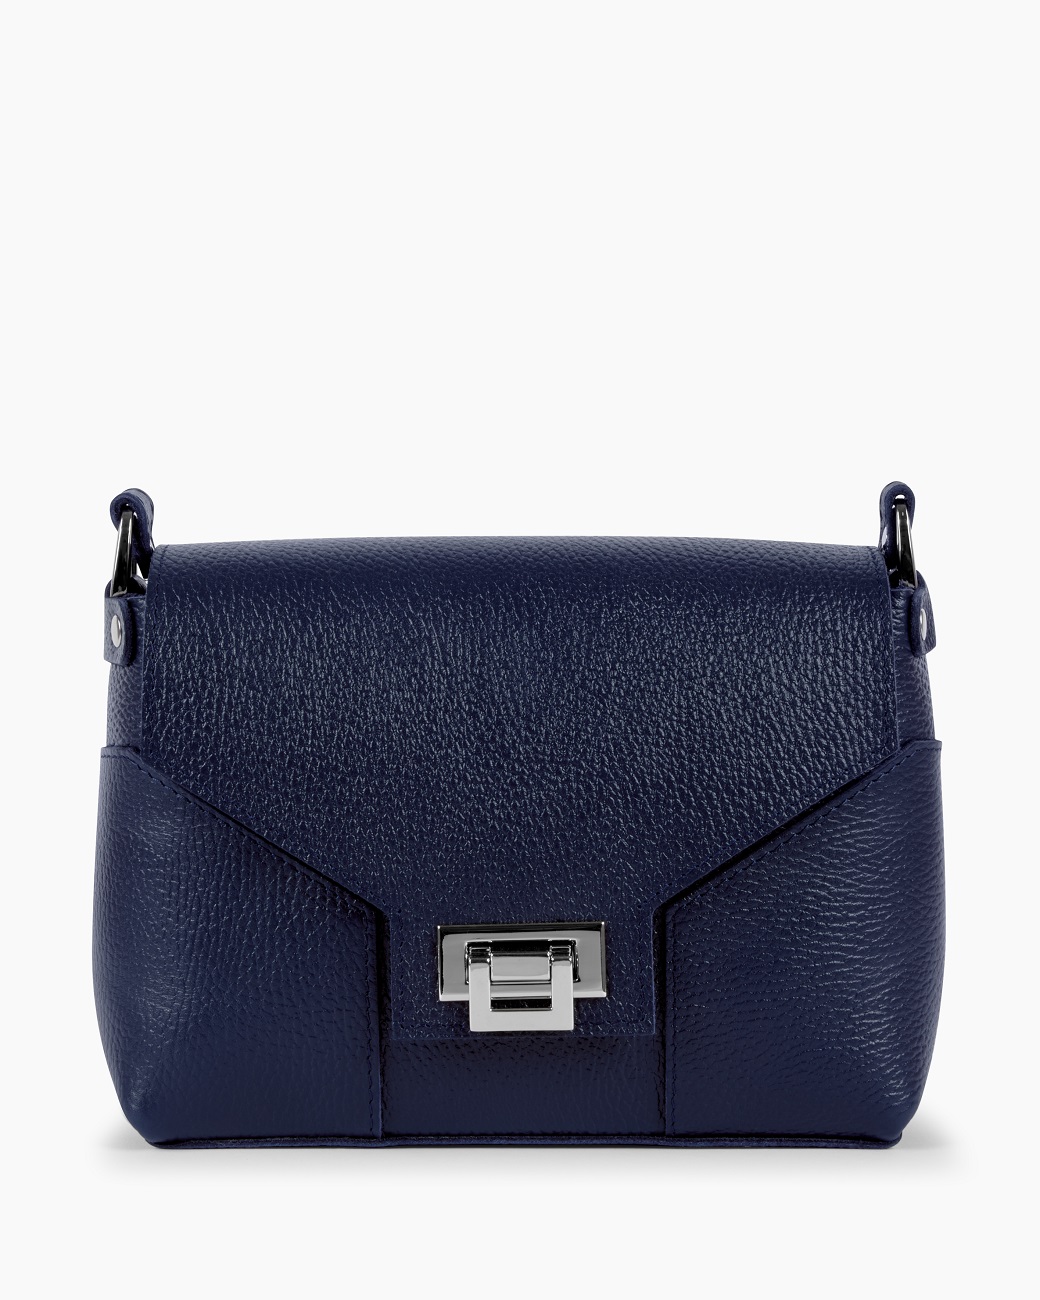 Женская сумка через плечо из натуральной кожи синяя A011 sapphire grain